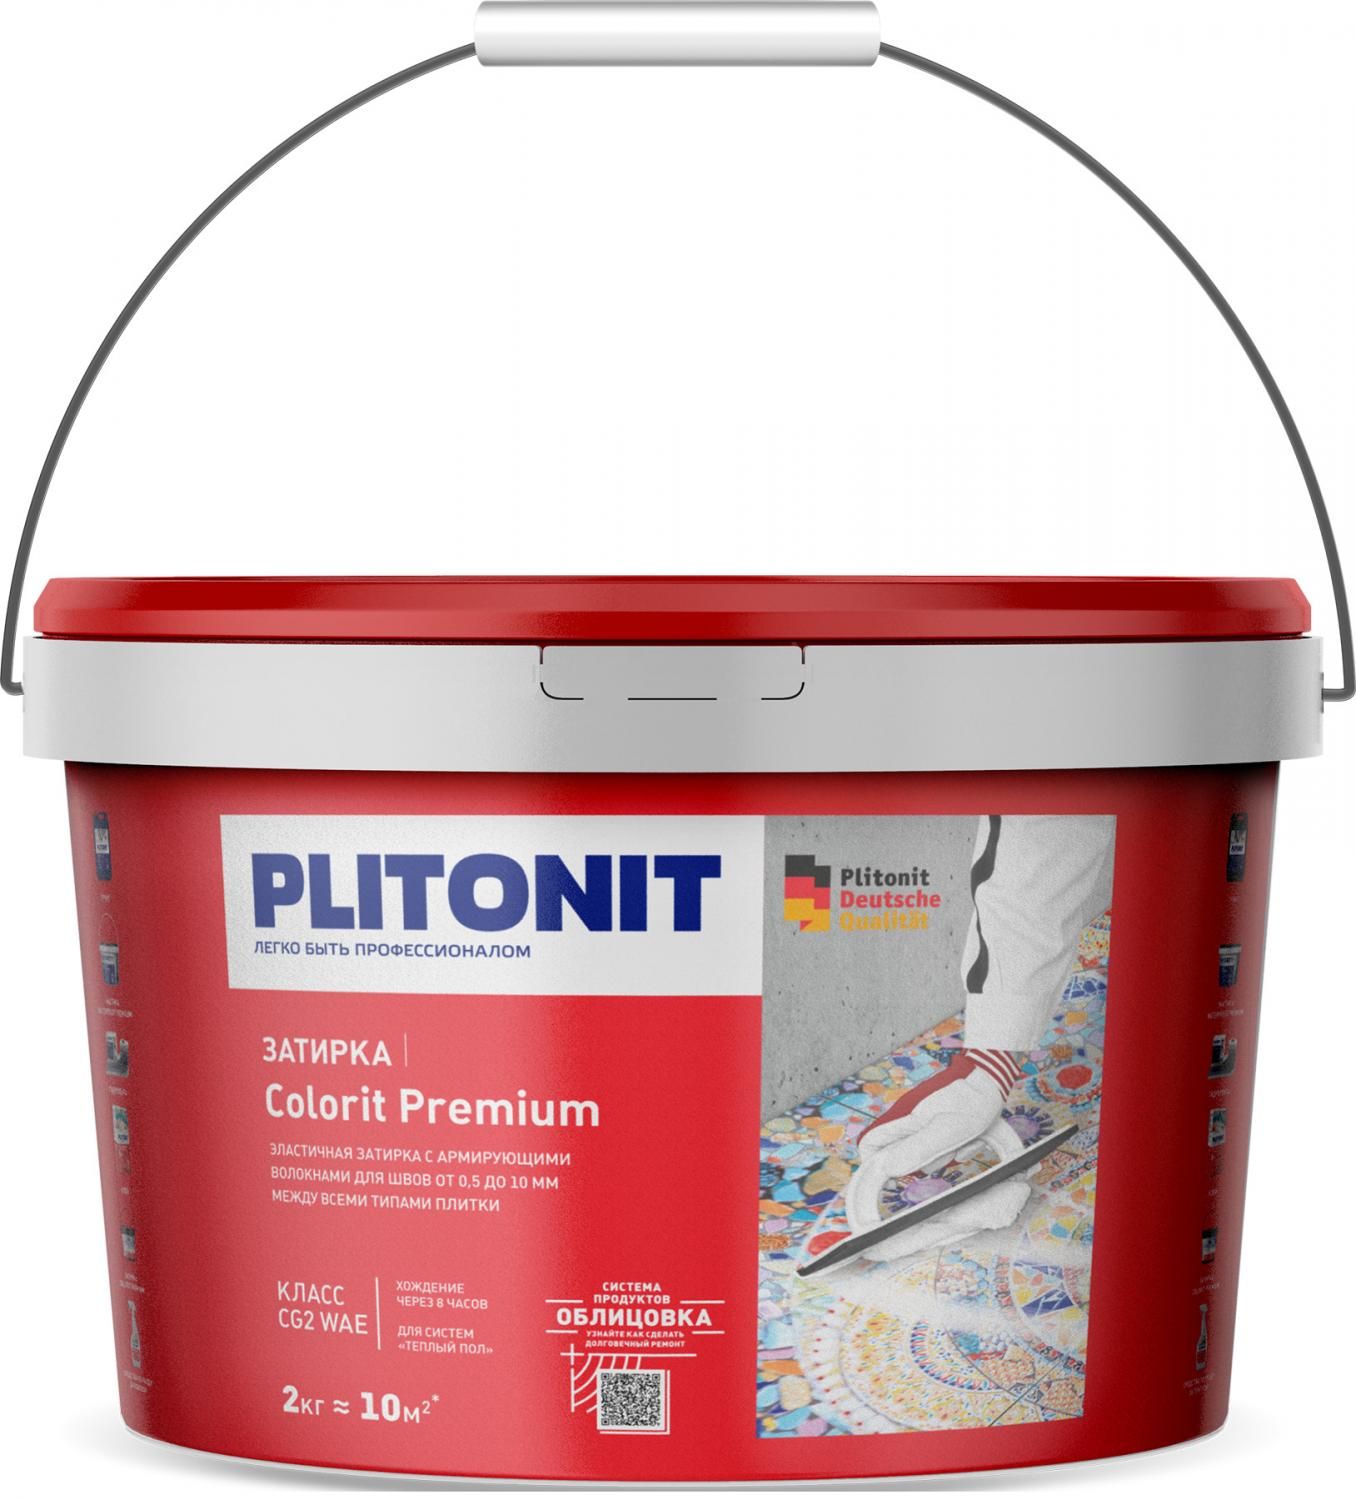 Купить Затирка Plitonit Colorit Premium черная 2 кг цементная